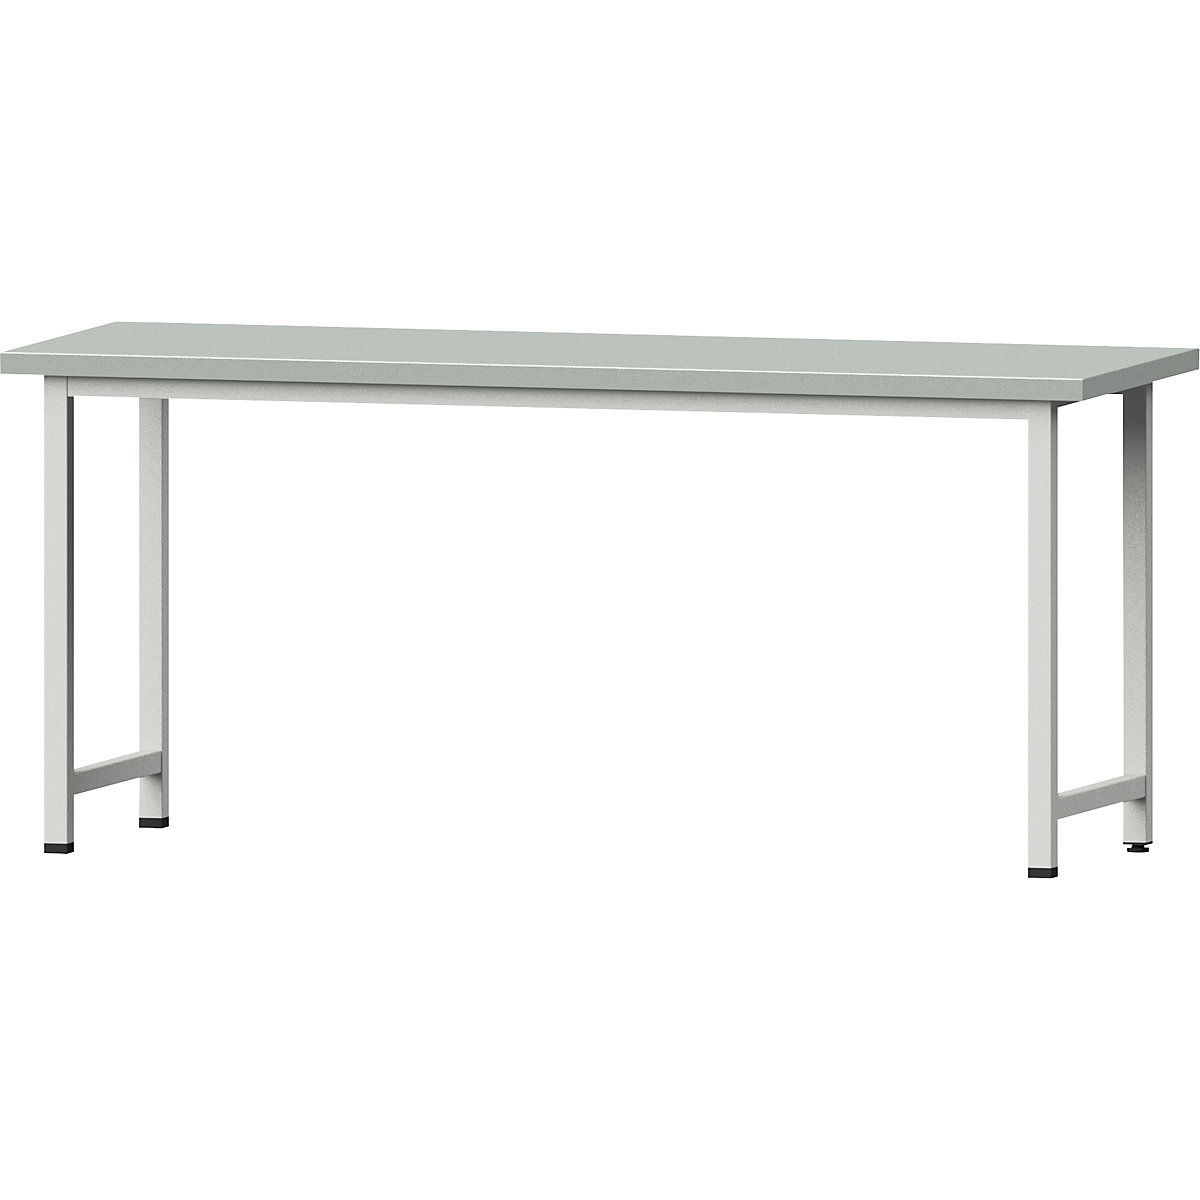 Dielenský stôl, stojanové vyhotovenie – ANKE, základný model, š x h 2000 x 700 mm, doska s povrchom z oceľového plechu, výška 890 mm-11